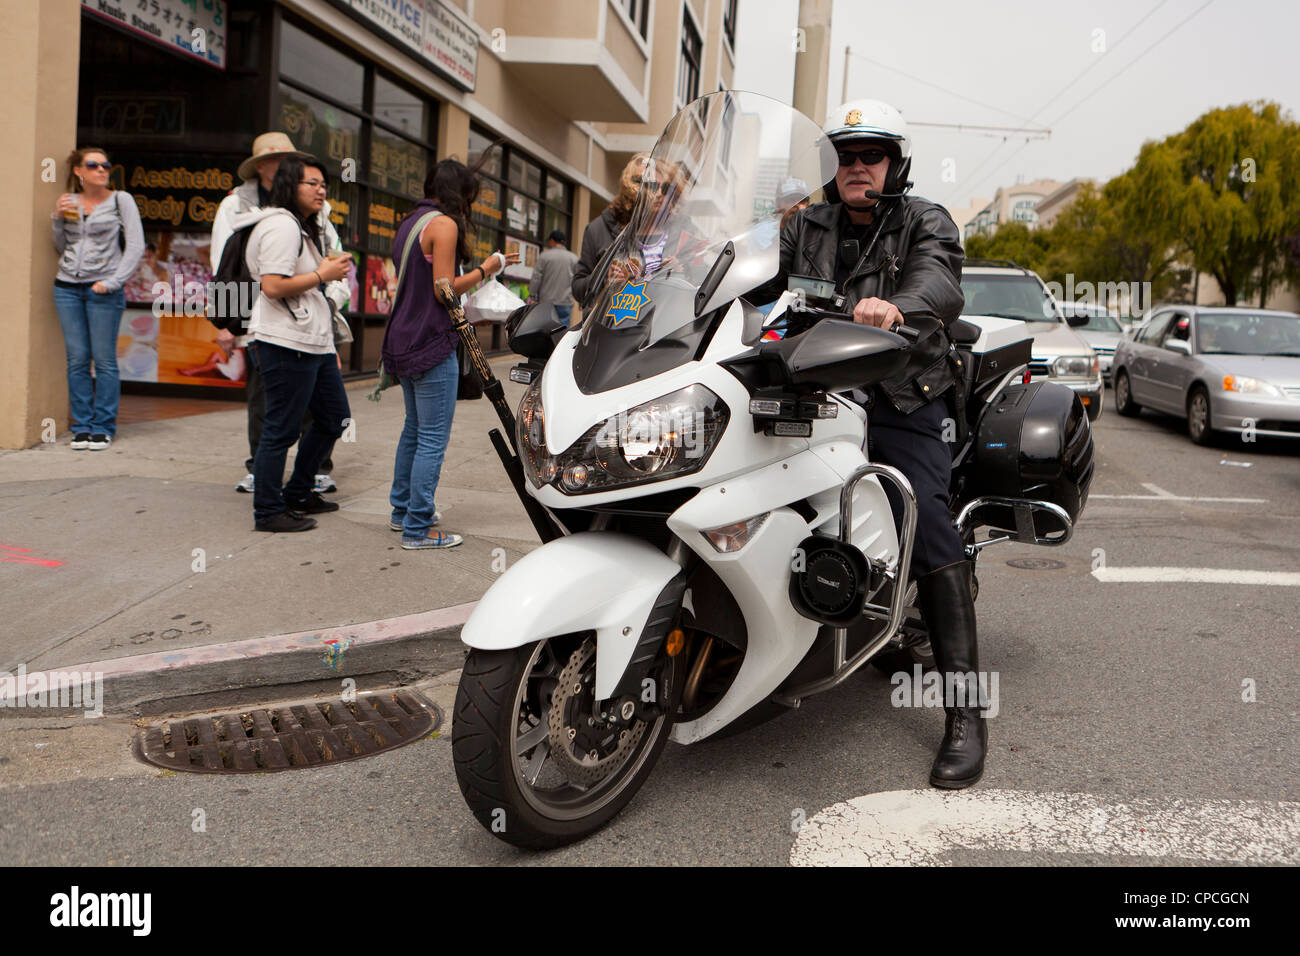 Nosotros motocicleta cp - San Francisco, California, EE.UU. Foto de stock